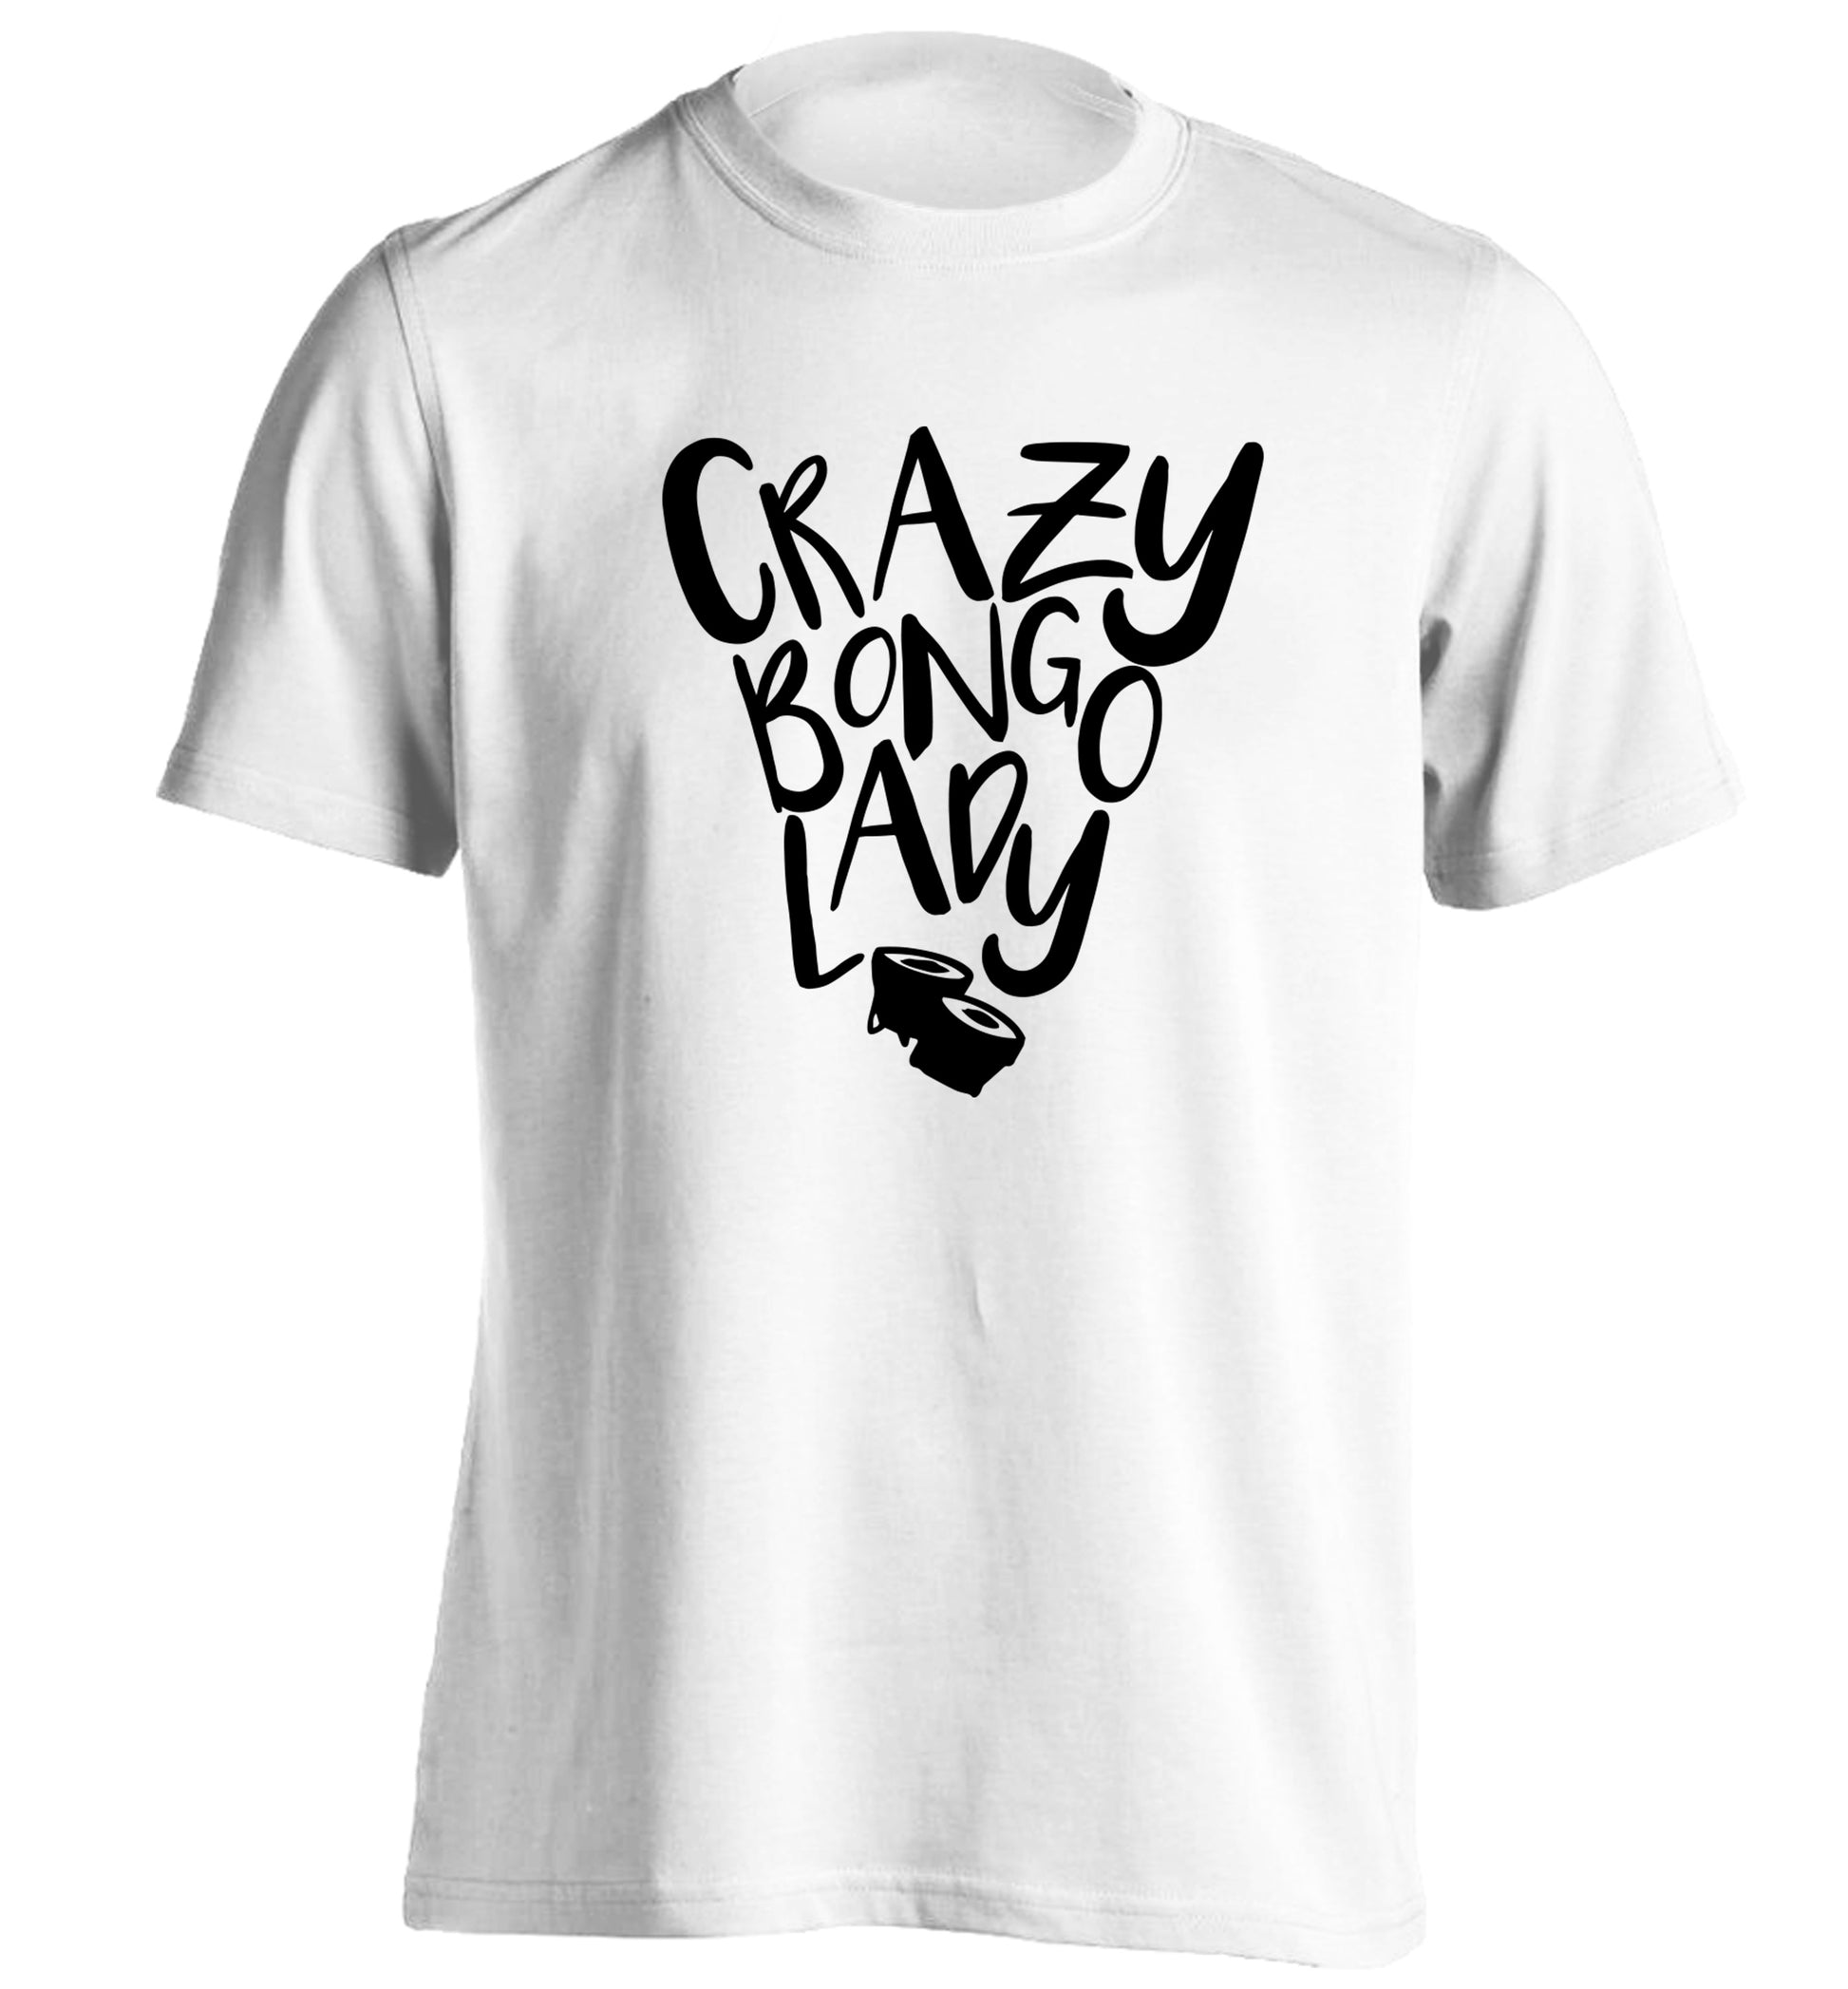 Crazy bongo lady adults unisex white Tshirt 2XL